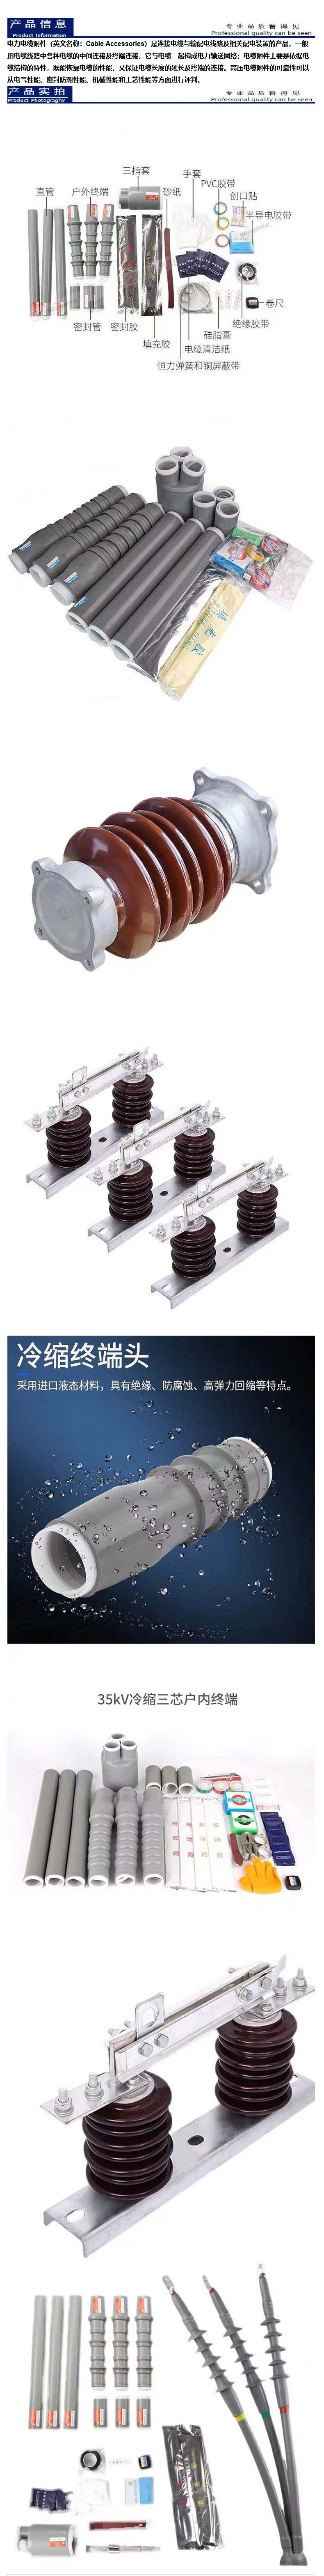 云南电缆附件系列 生产销售公司 规格